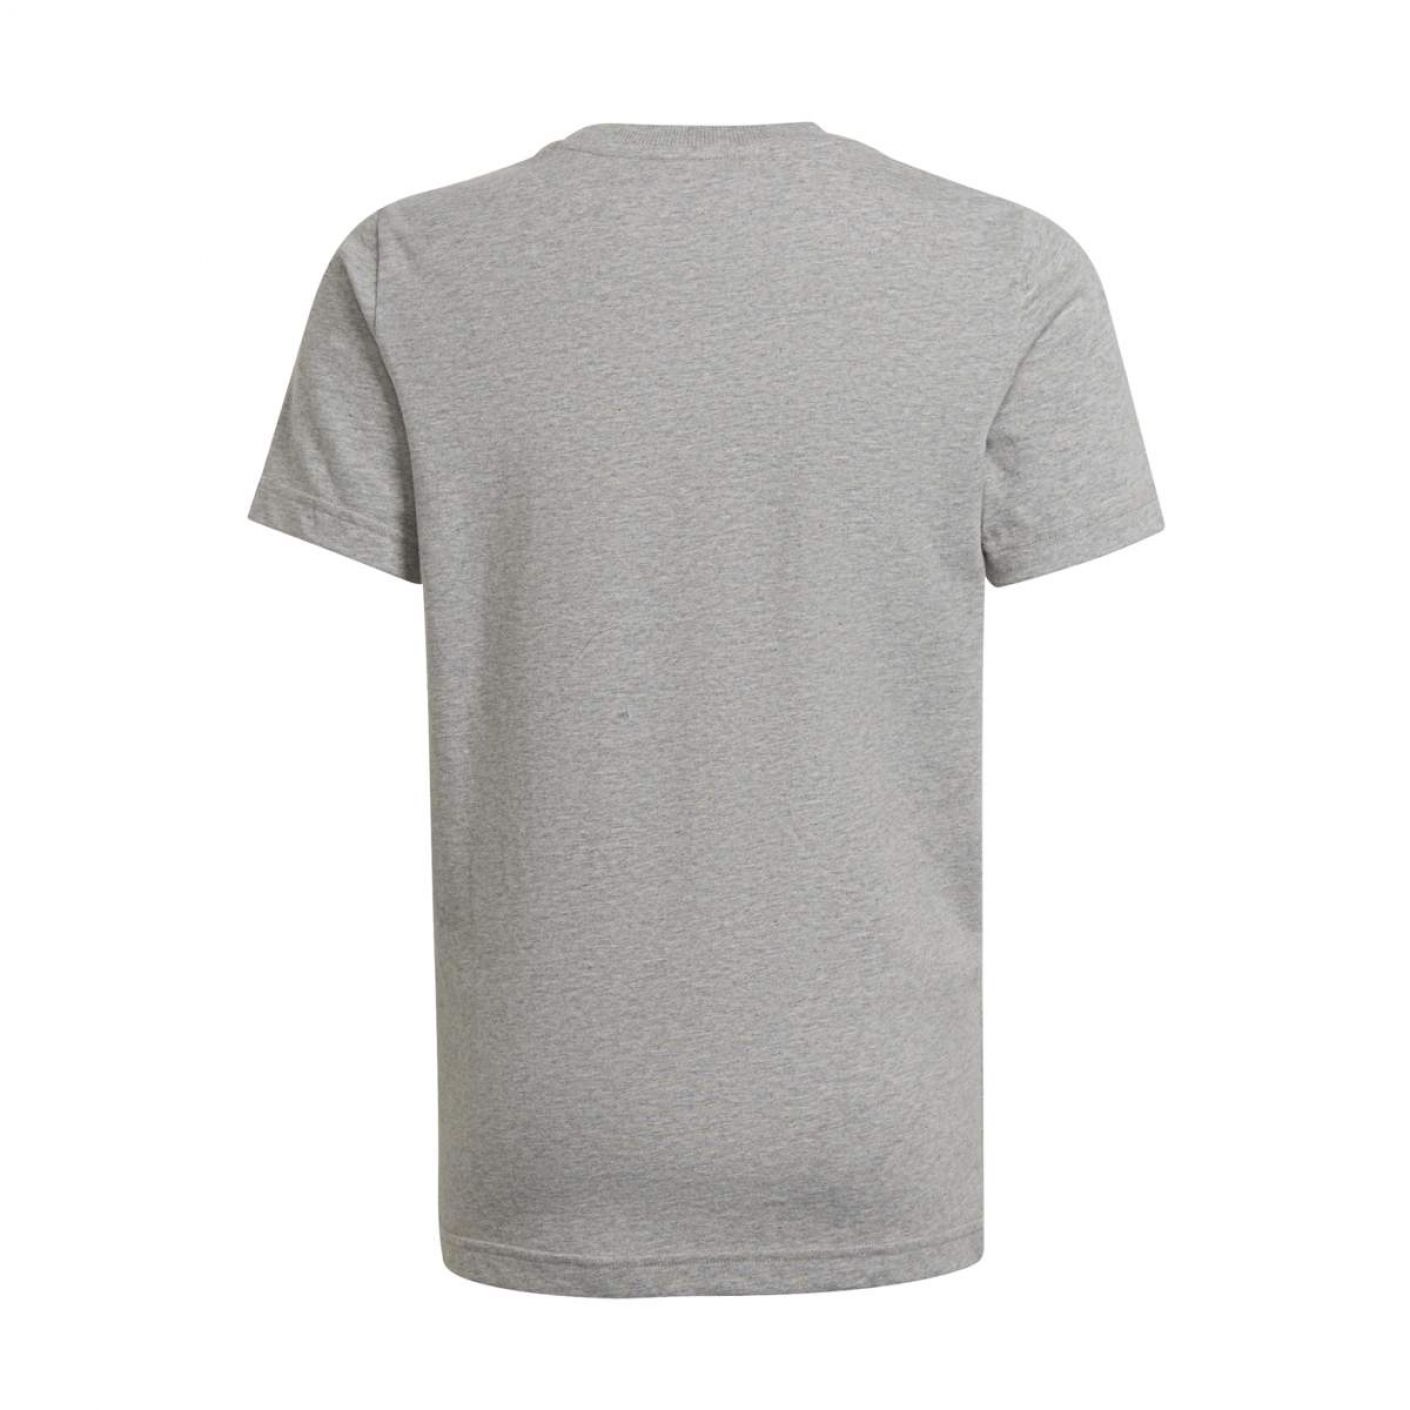 Adidas Boys Essentials T-Shirt Big Logo Grigia